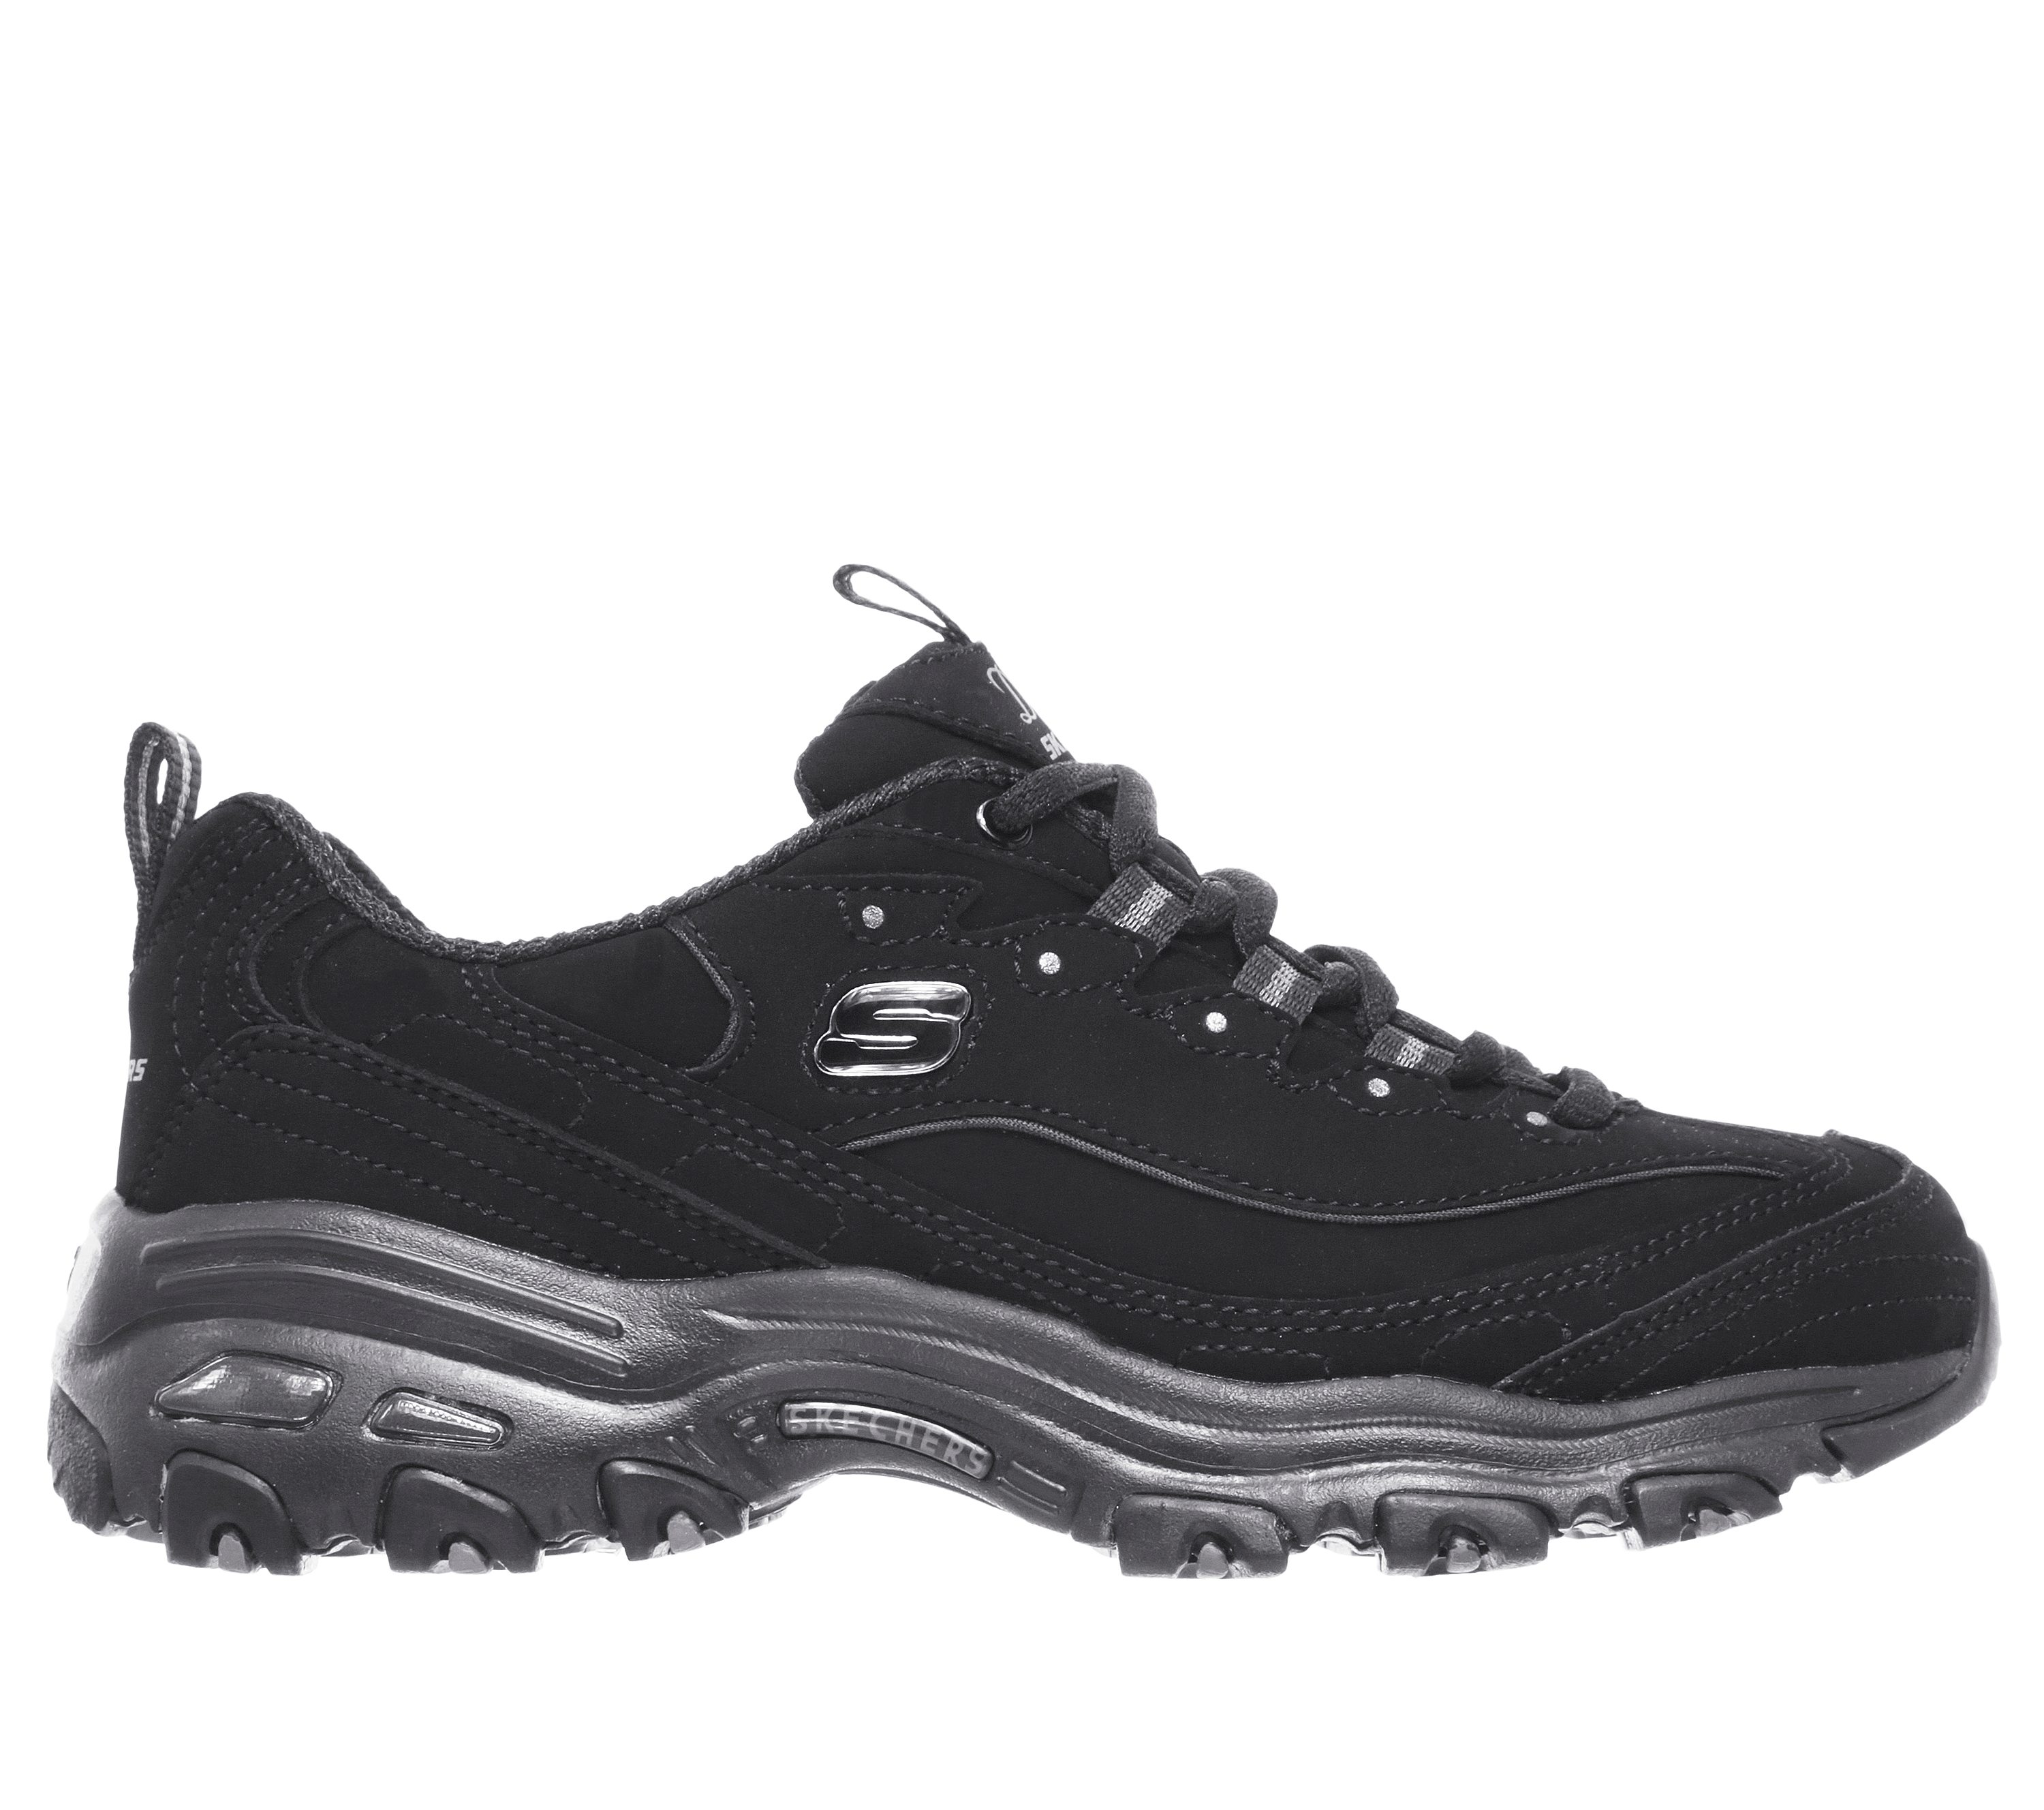 Womens Sketchers D'lites Leather Memory Foam Casual Walking Sport Trainers Shoe